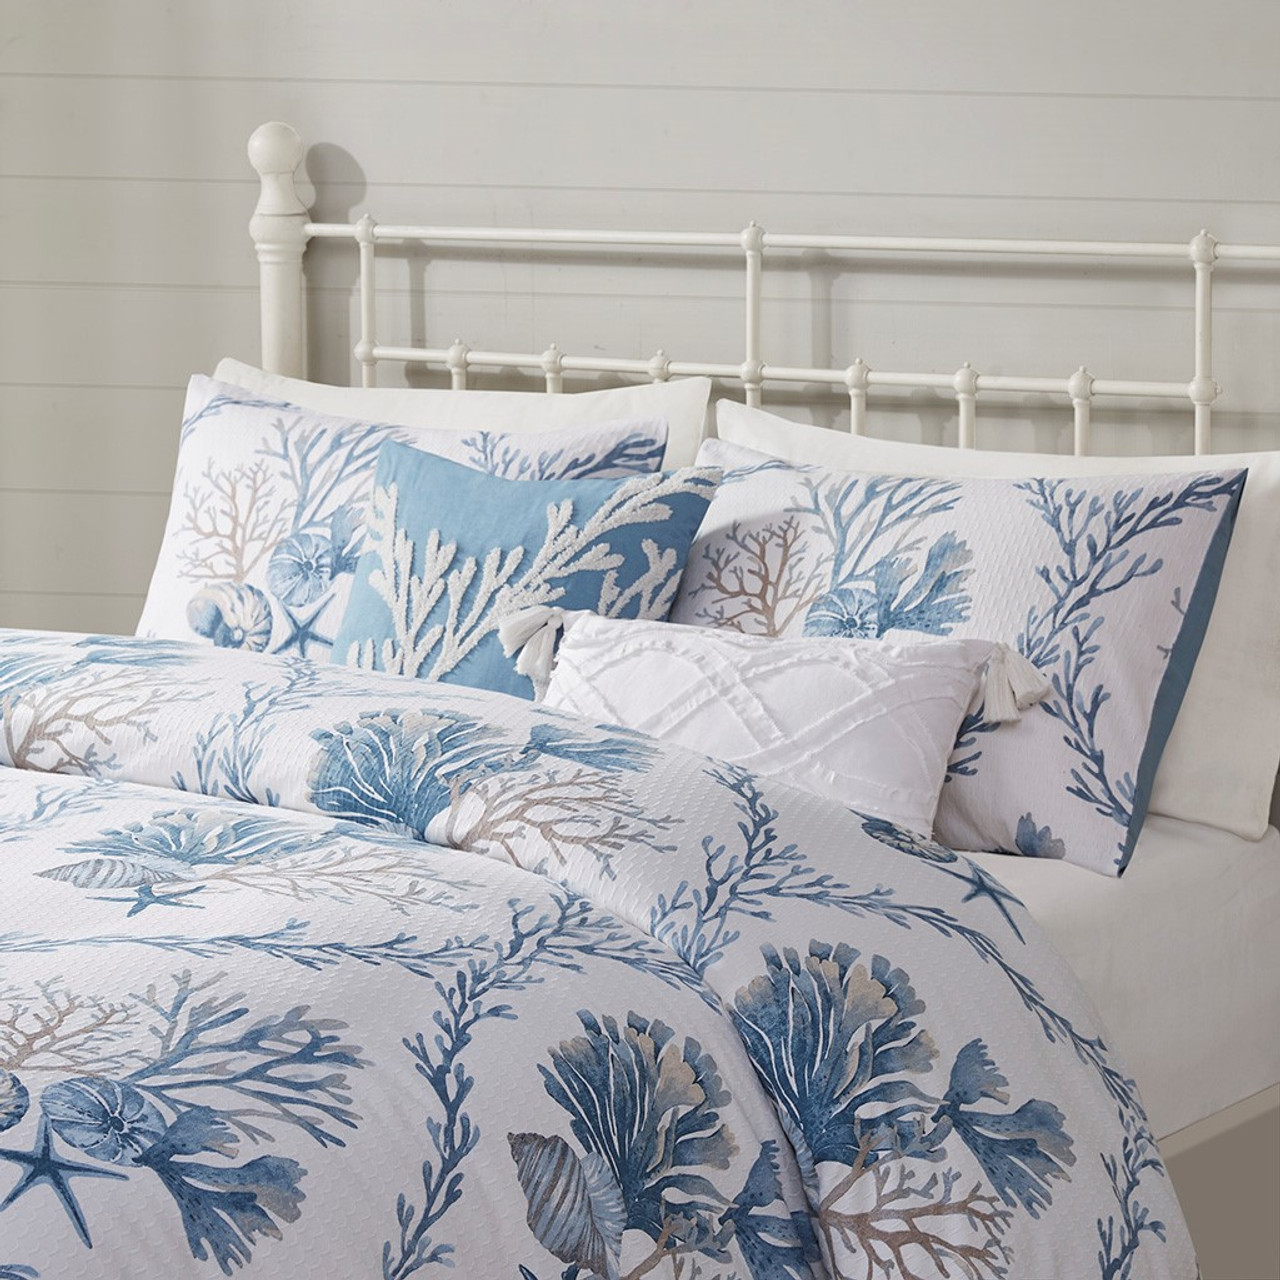 Coastal-Beach Bedding Comforter Sets | Caron's Beach House